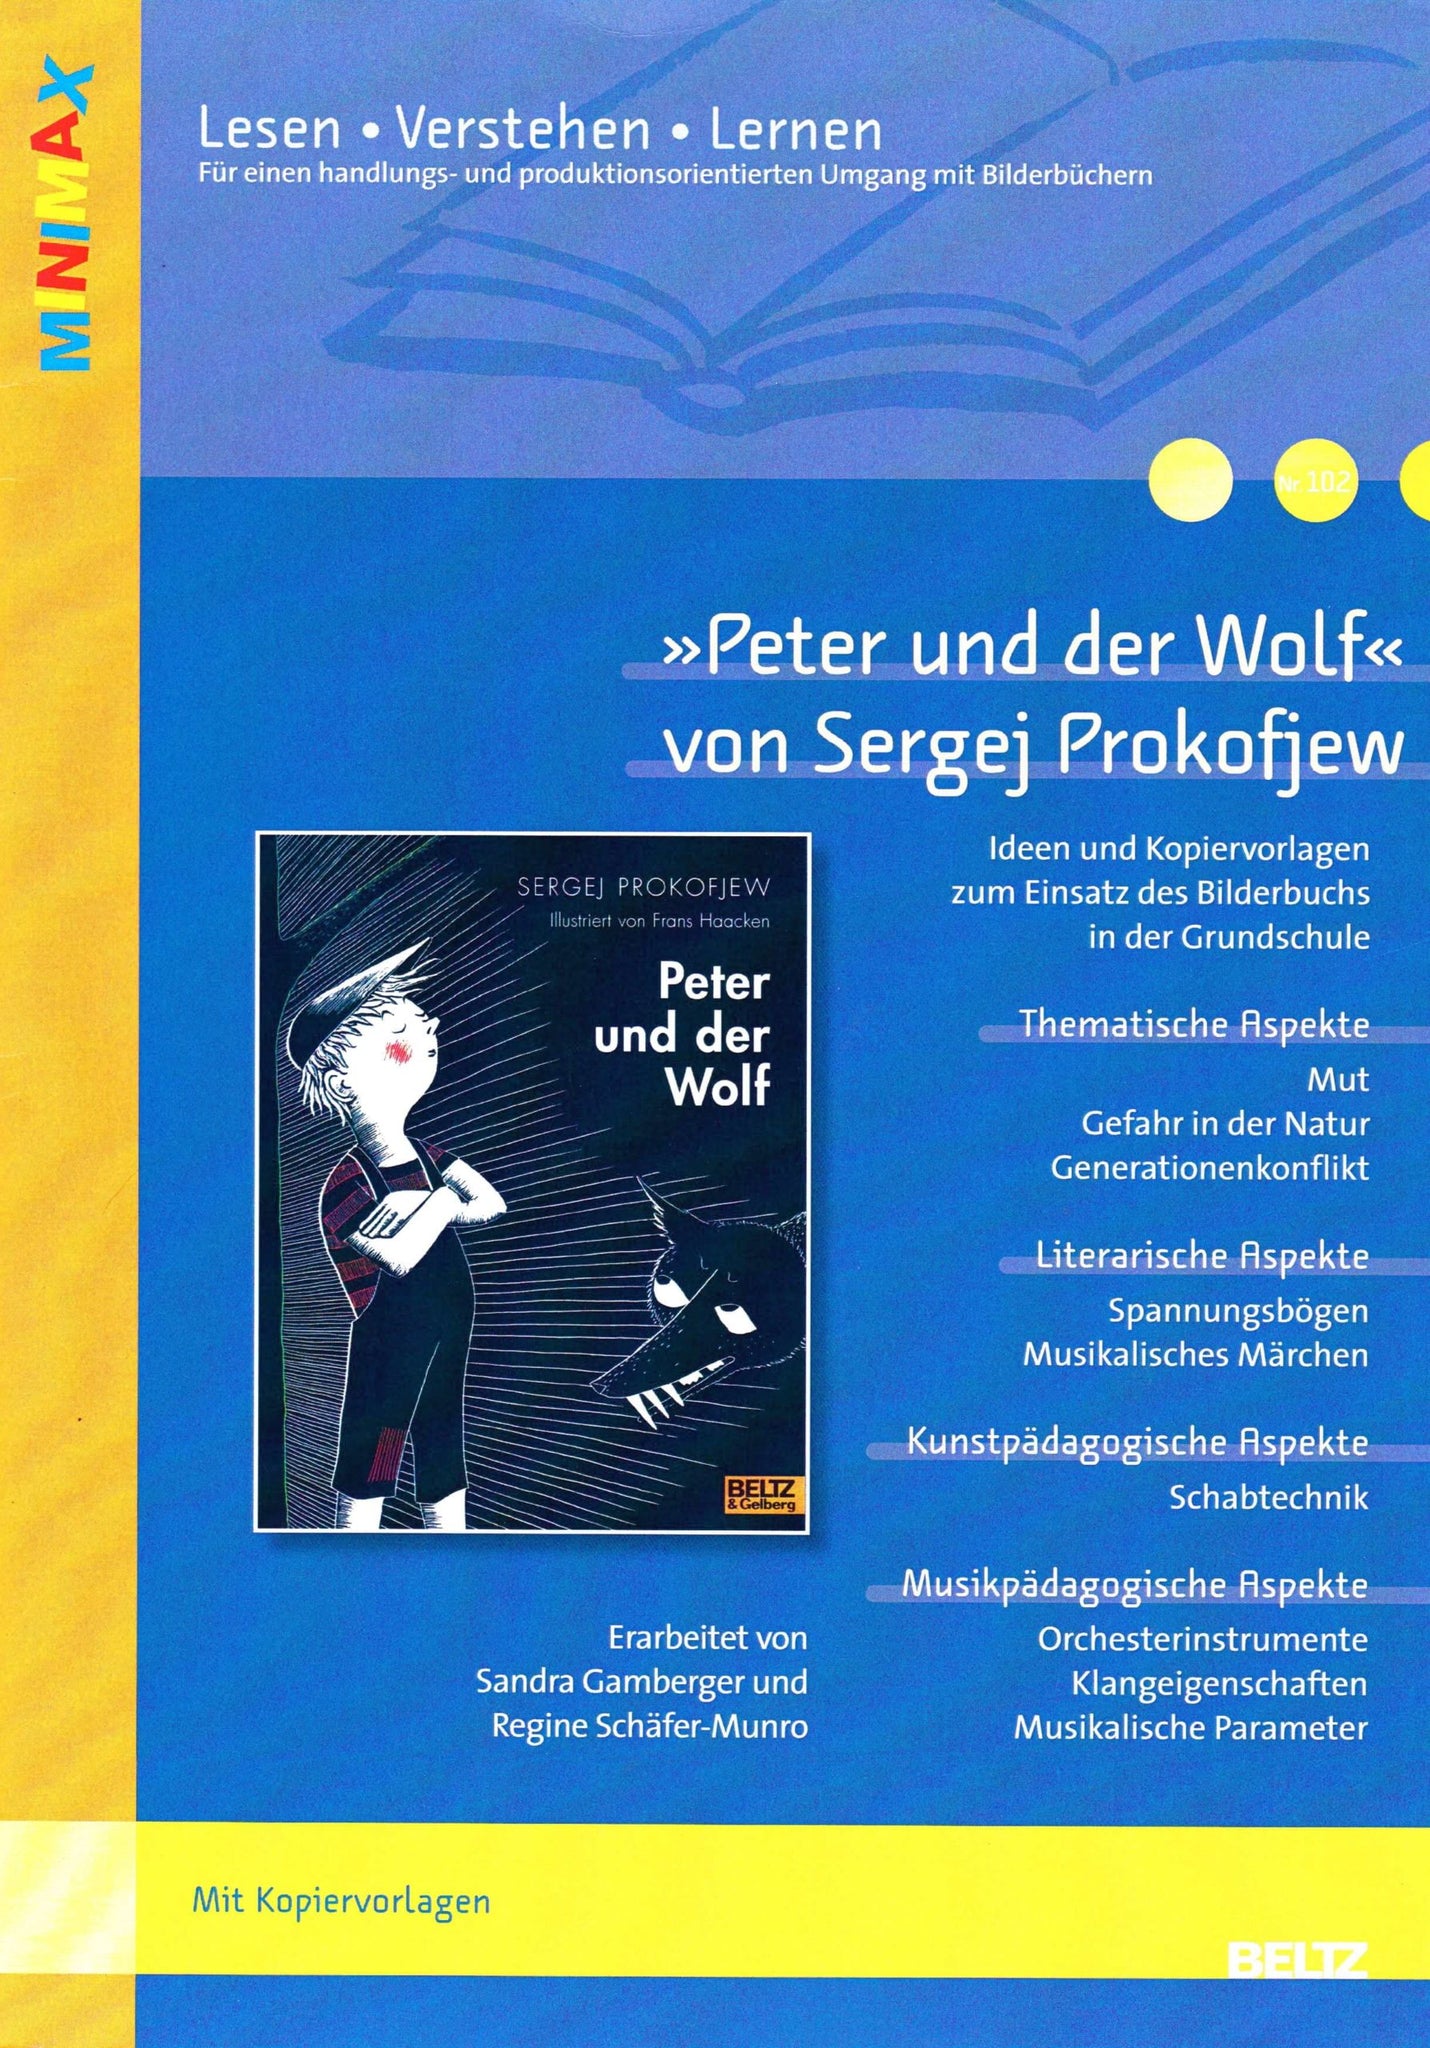 Peter-und-der-Wolf-lesen-verstehen-lernen-min